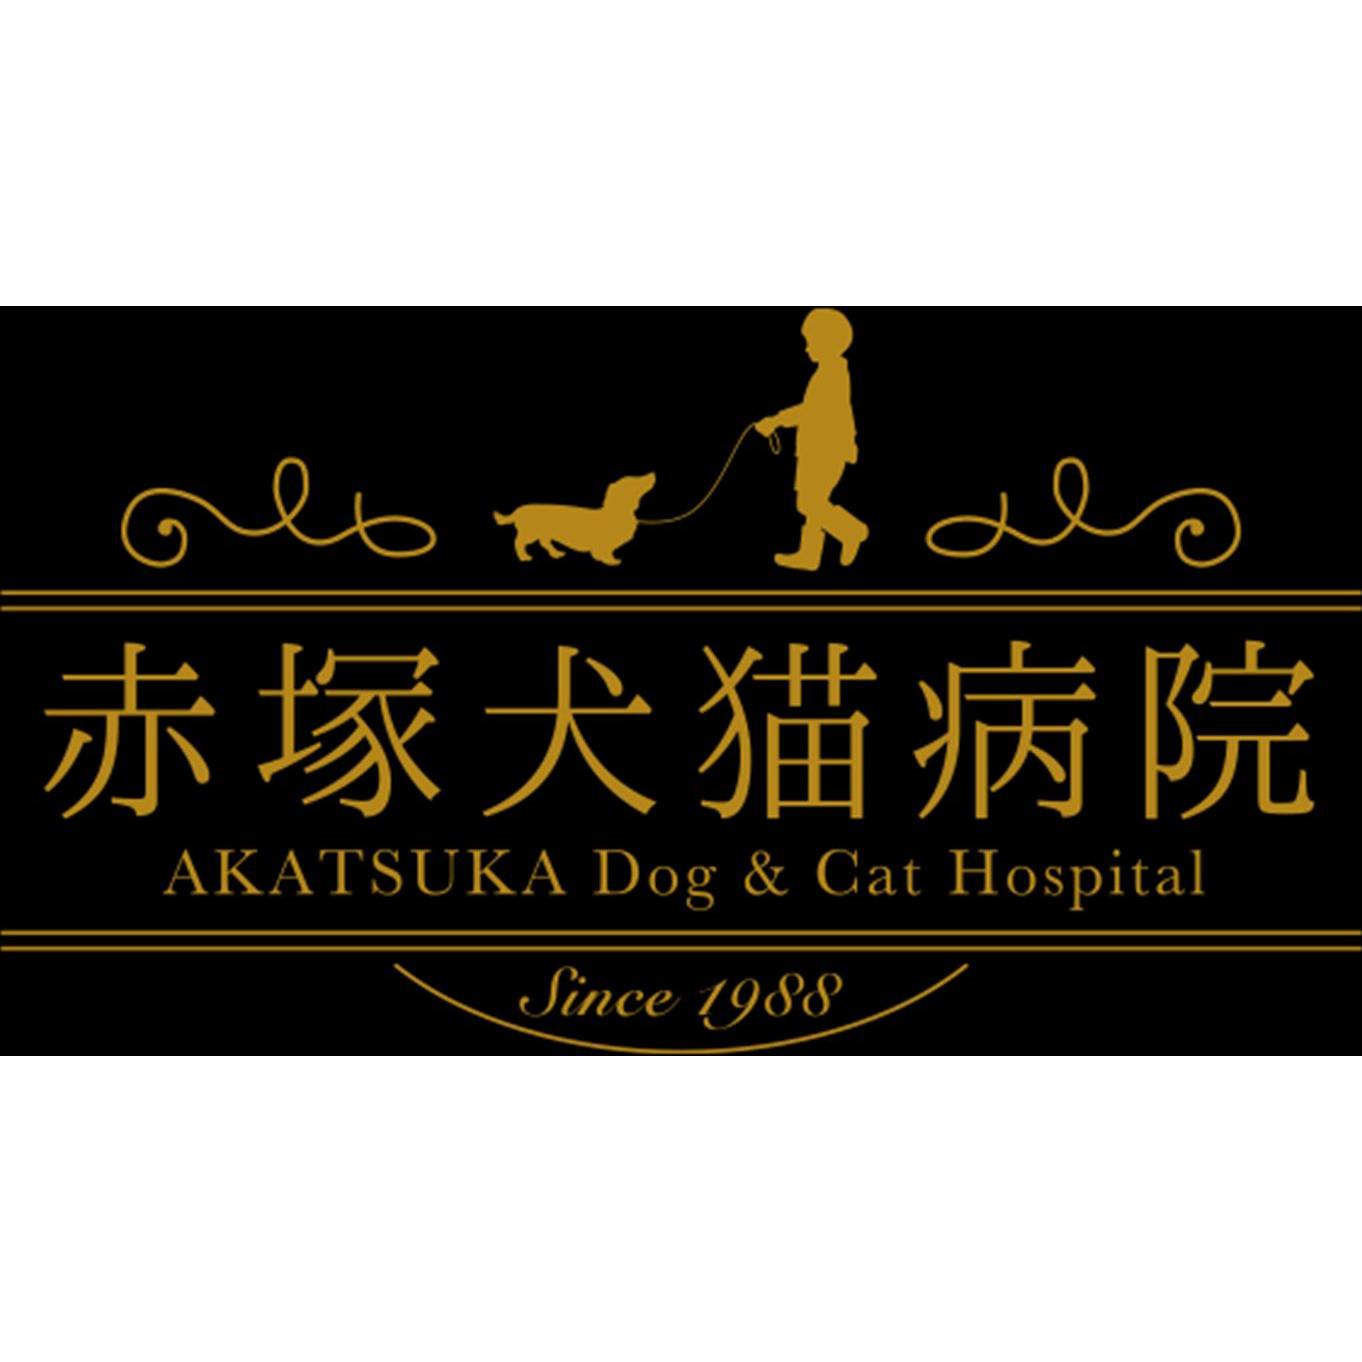 下末吉赤塚犬猫病院 Logo